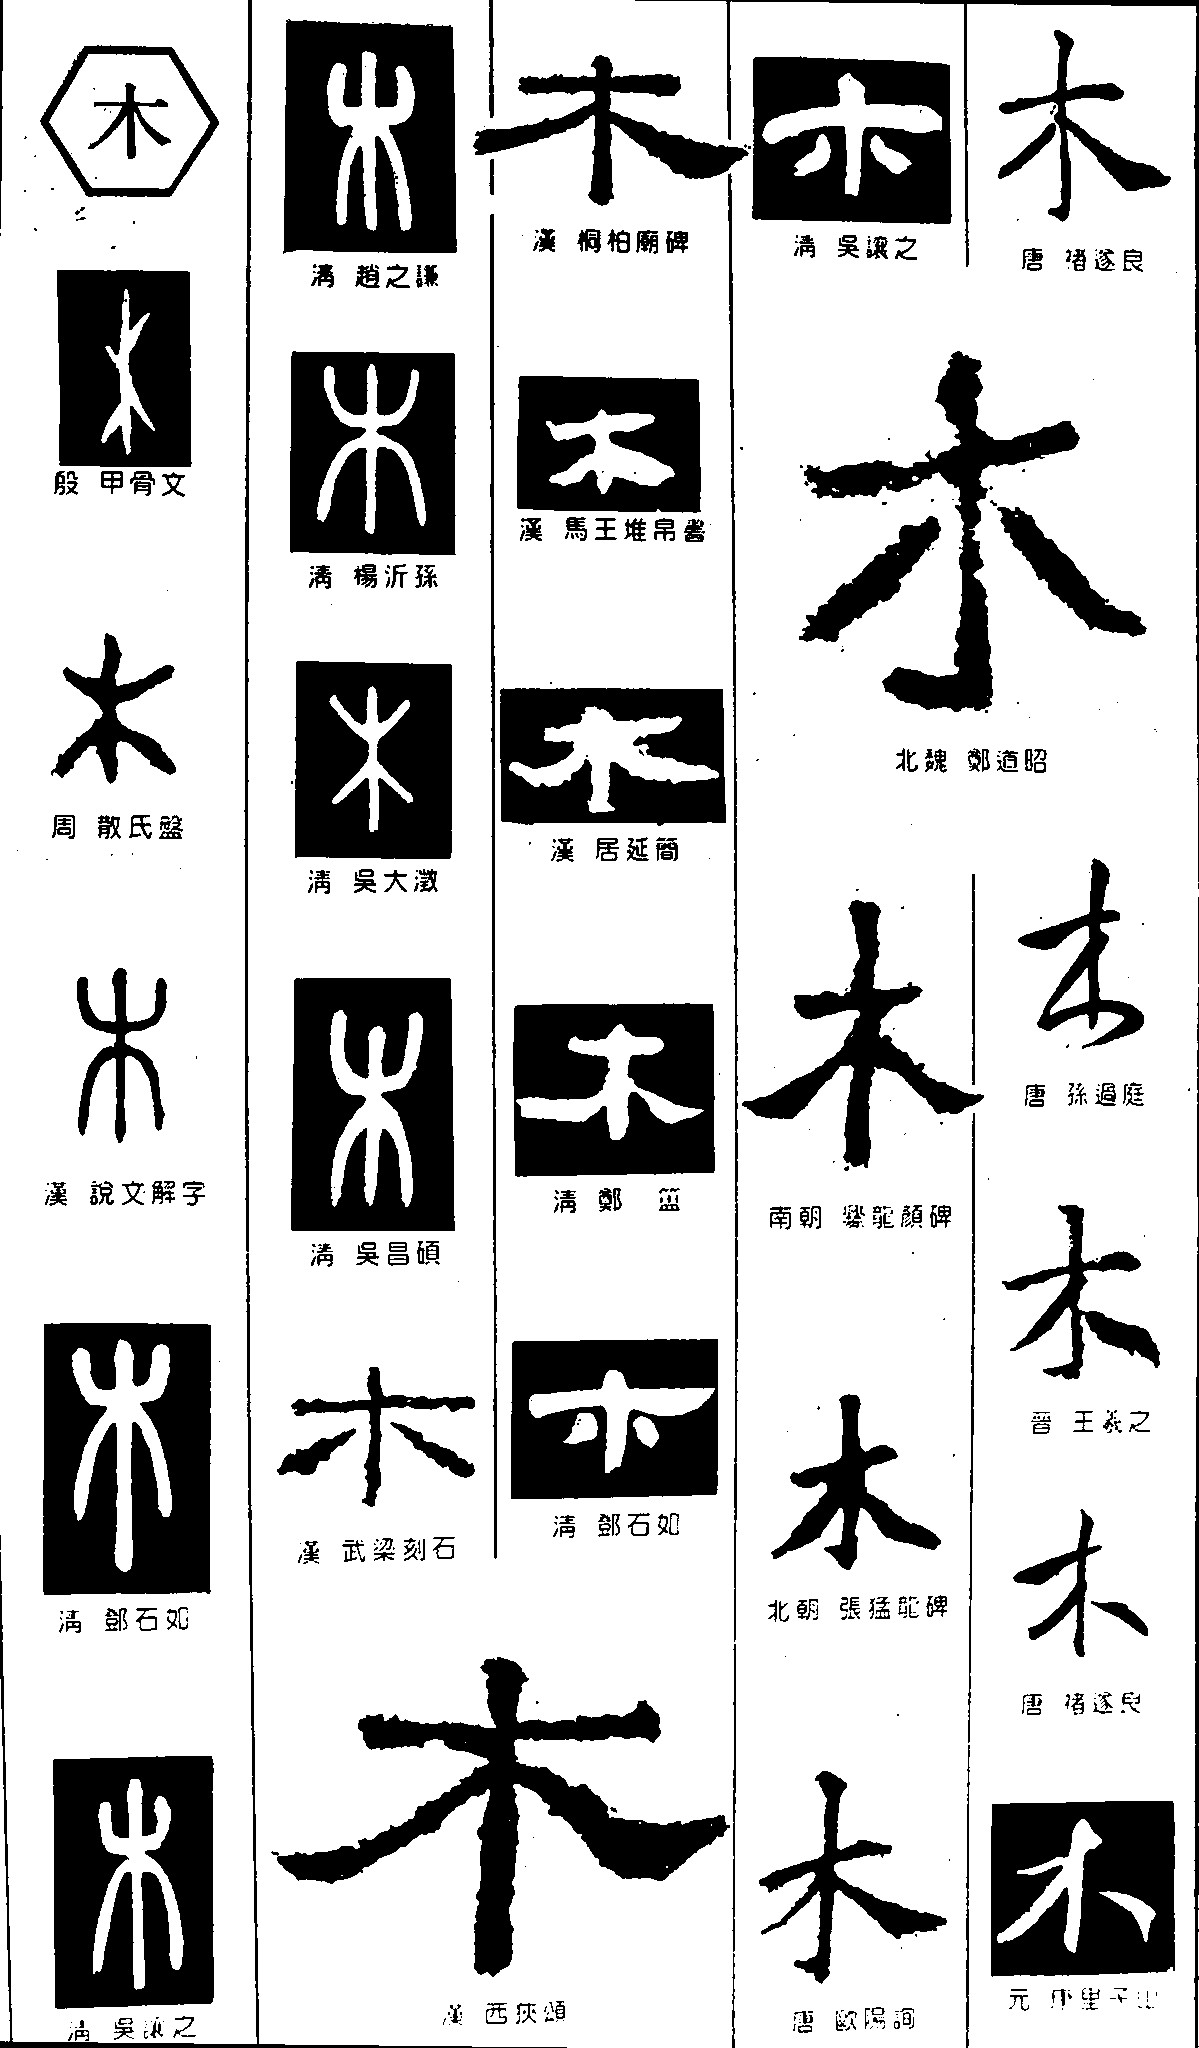 木_书法字体_字体设计作品-中国字体设计网_ziti.